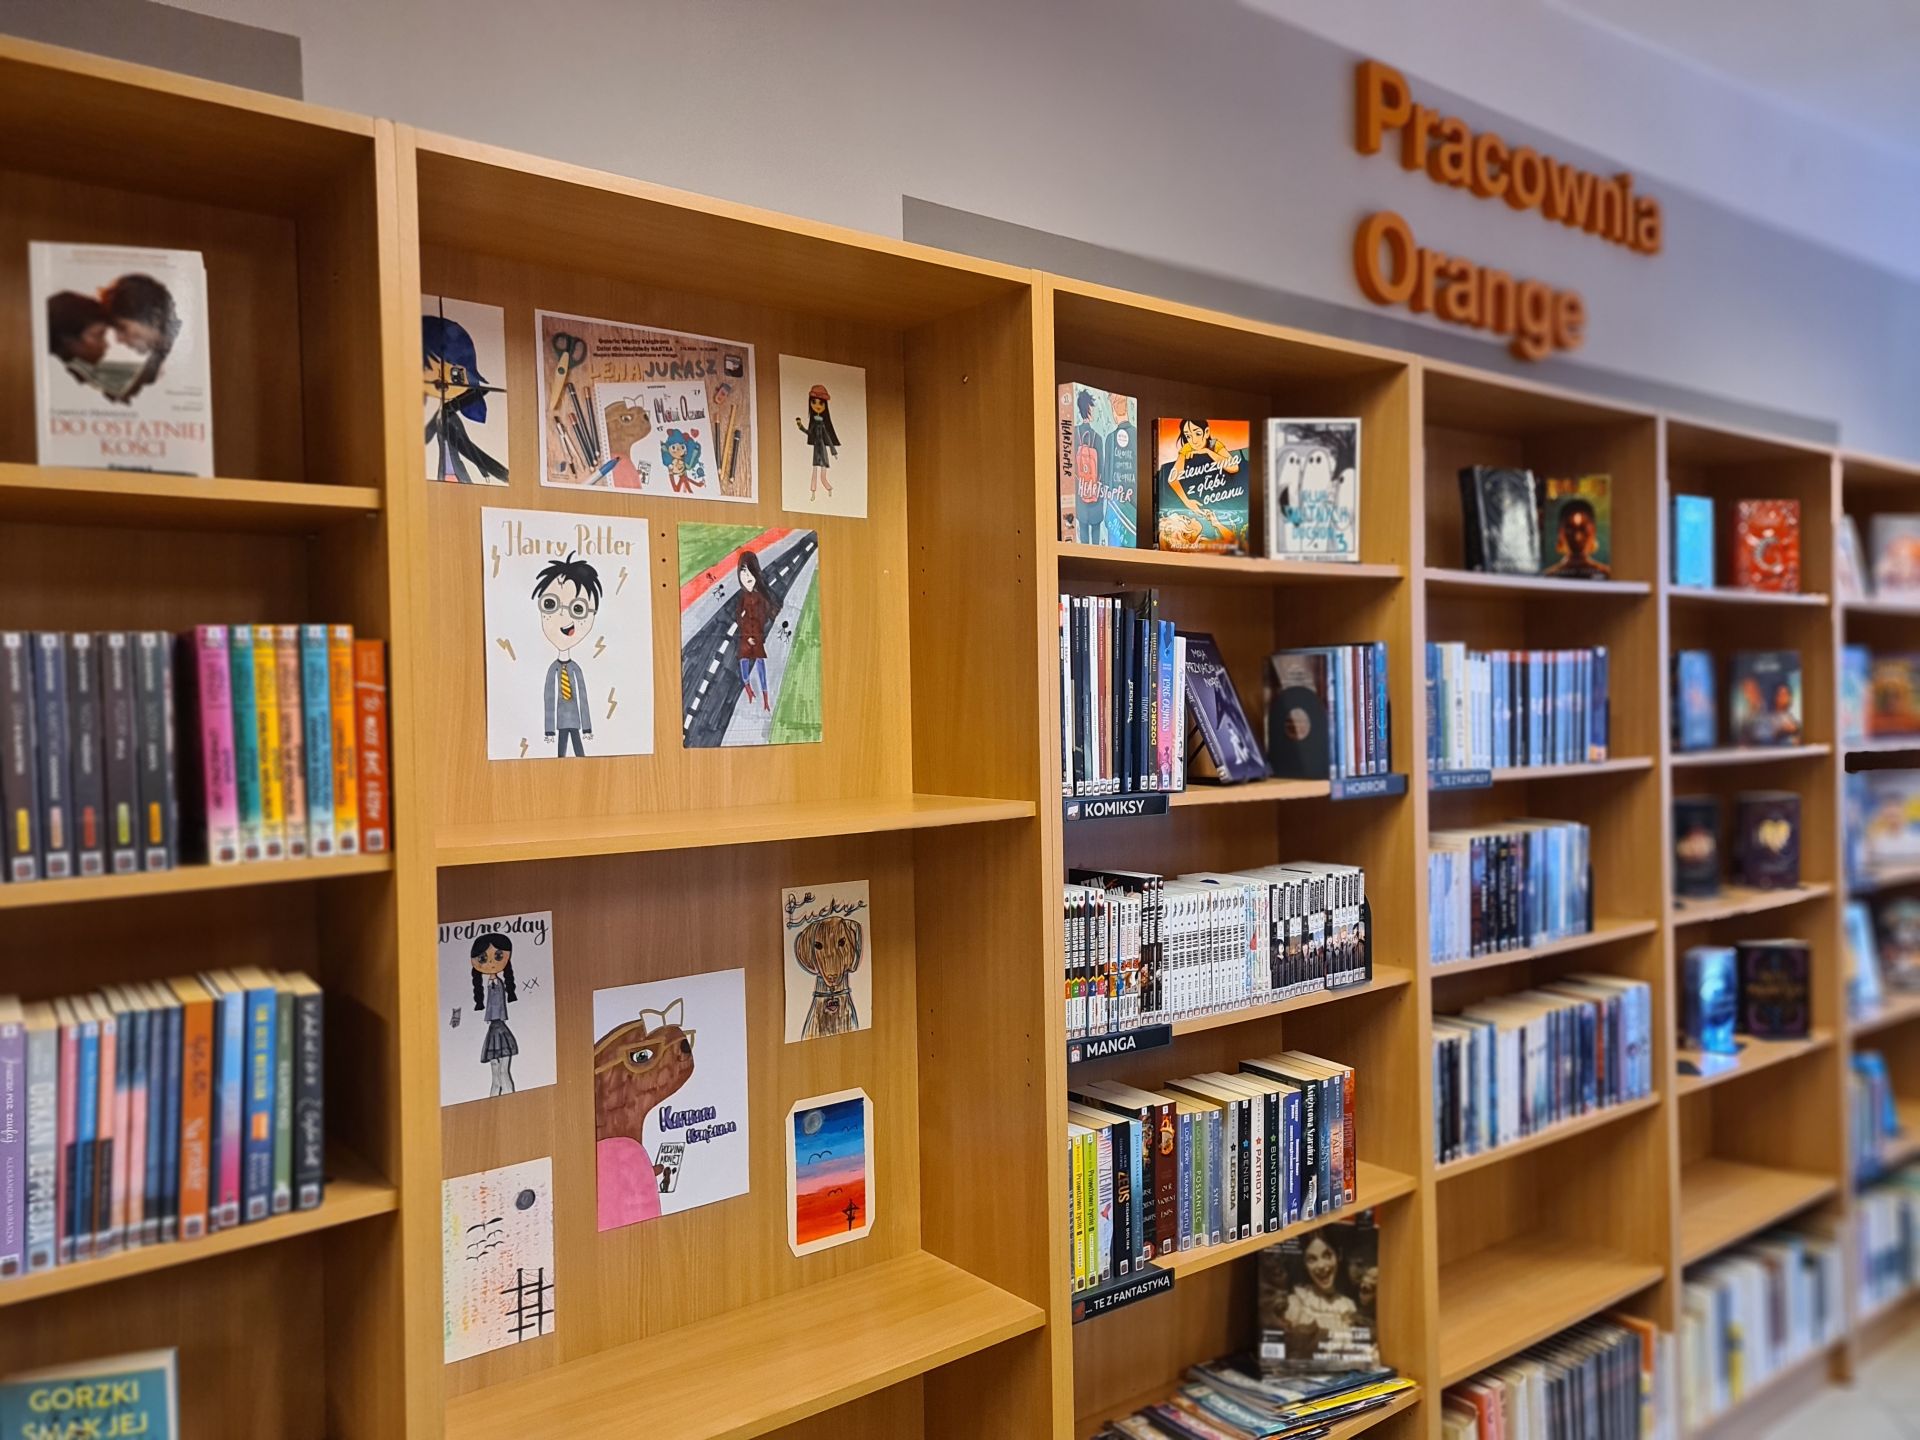 regały z książkami pod ścianą, z jednego z nich są wyjęte półki, a w wolnym miejscu wiszą prace plastyczne, nad regałami logo pracowni Orange